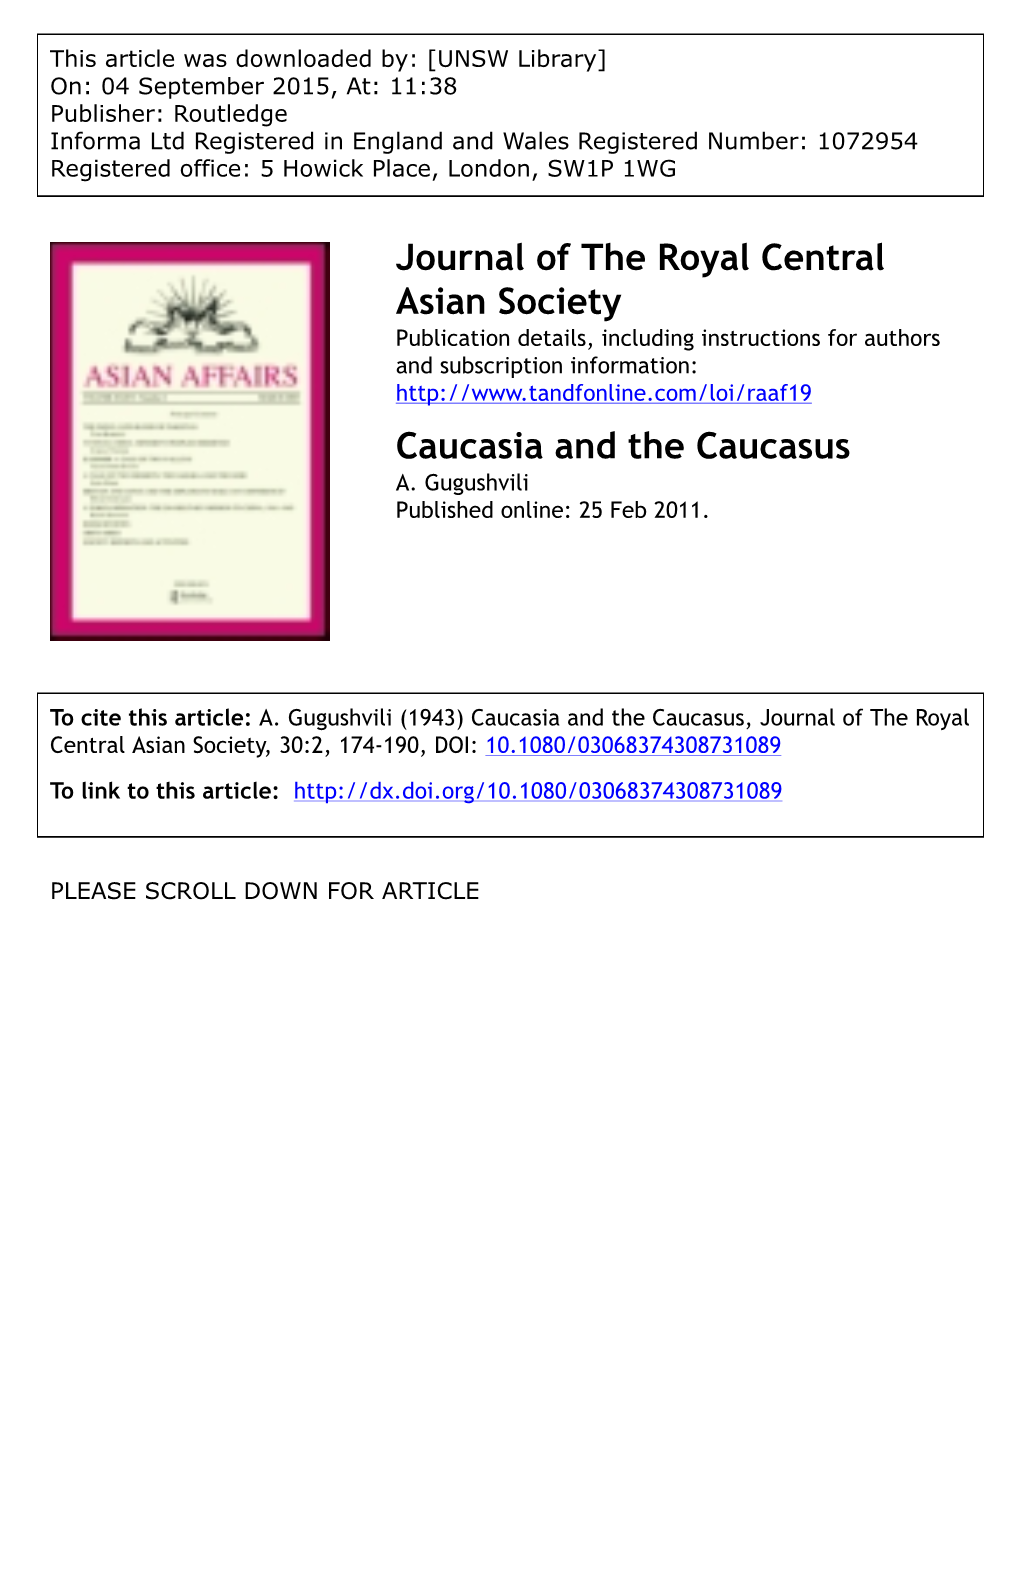 Caucasia and the Caucasus A